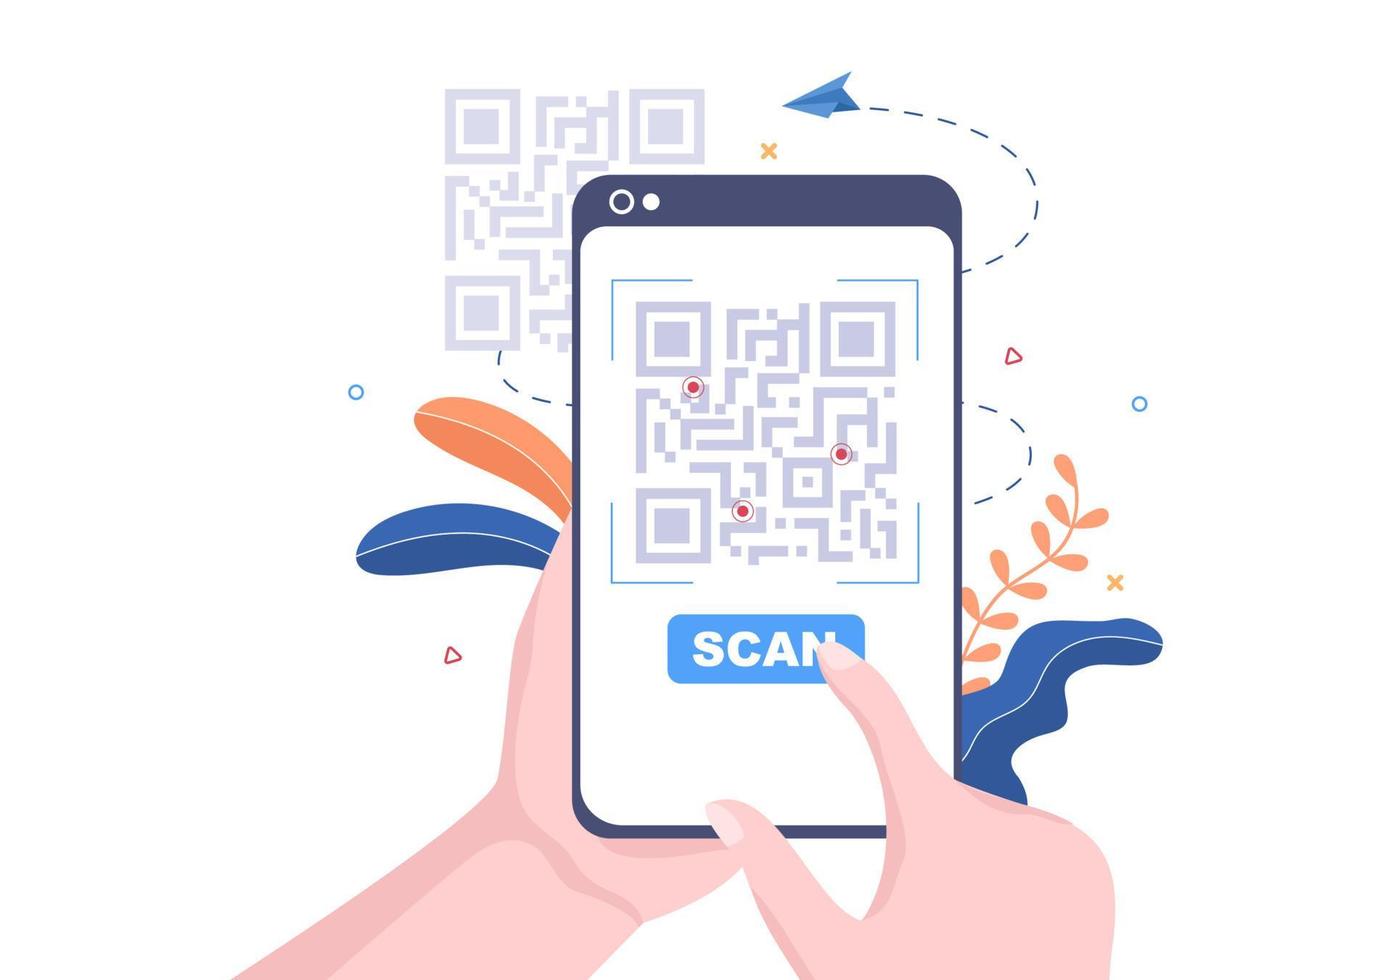 scanner de código QR para pagamento online, pagamento eletrônico e transferência de dinheiro no smartphone com o aplicativo em mãos. ilustração vetorial de fundo vetor